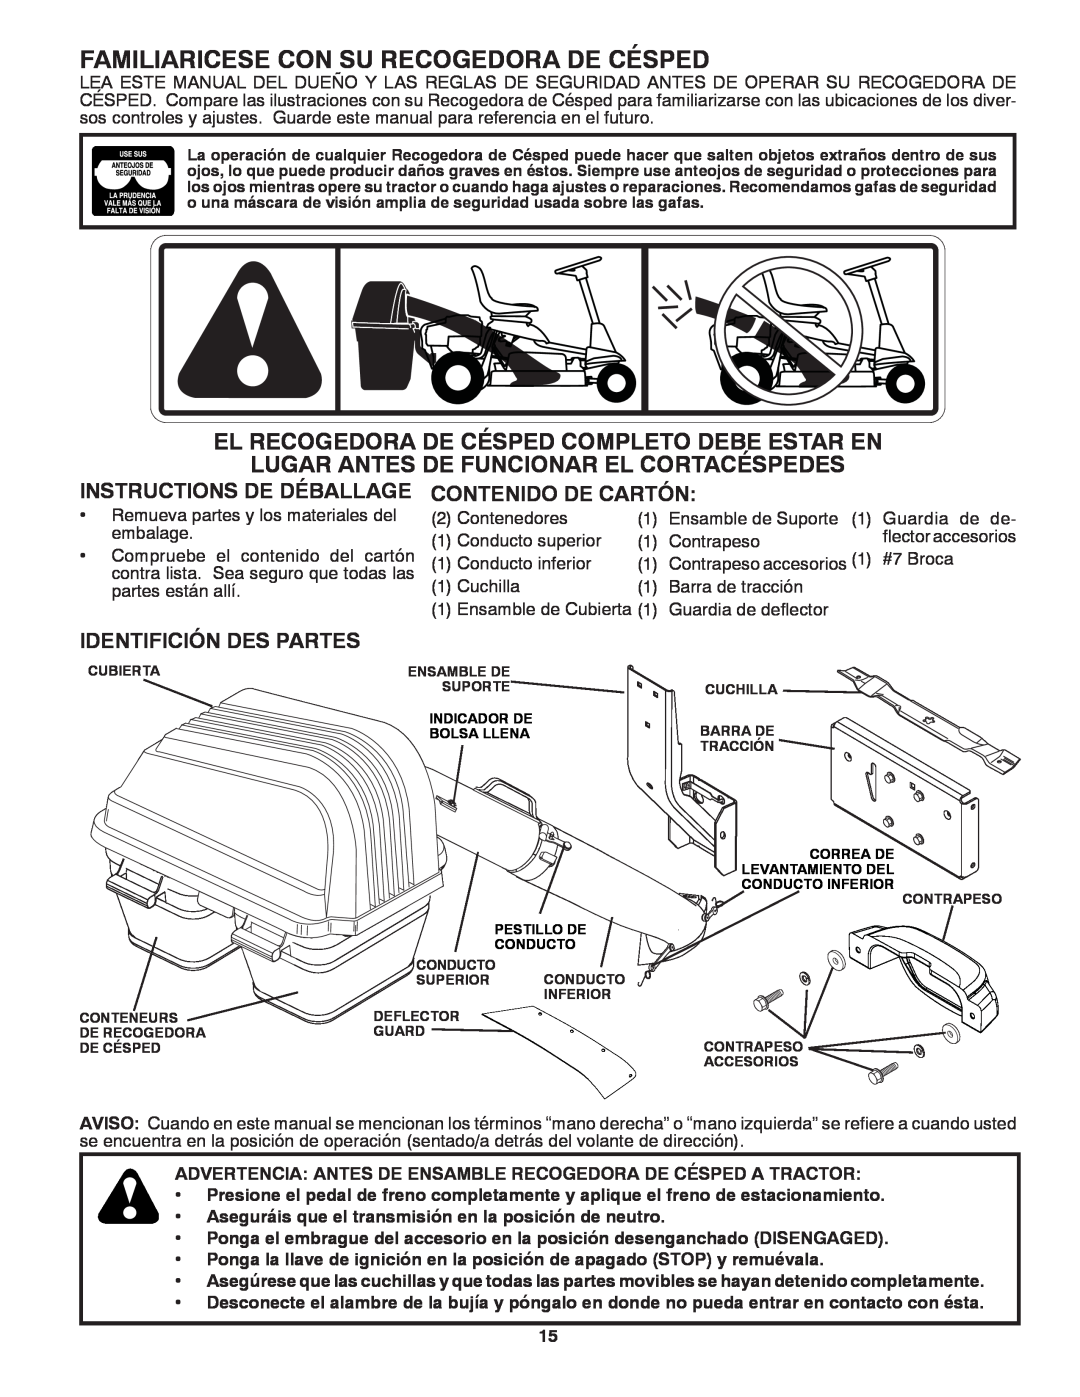 Craftsman 917.24991 manual Familiaricese Con Su Recogedora De Césped, Instructions De Déballage, Contenido De Cartón 